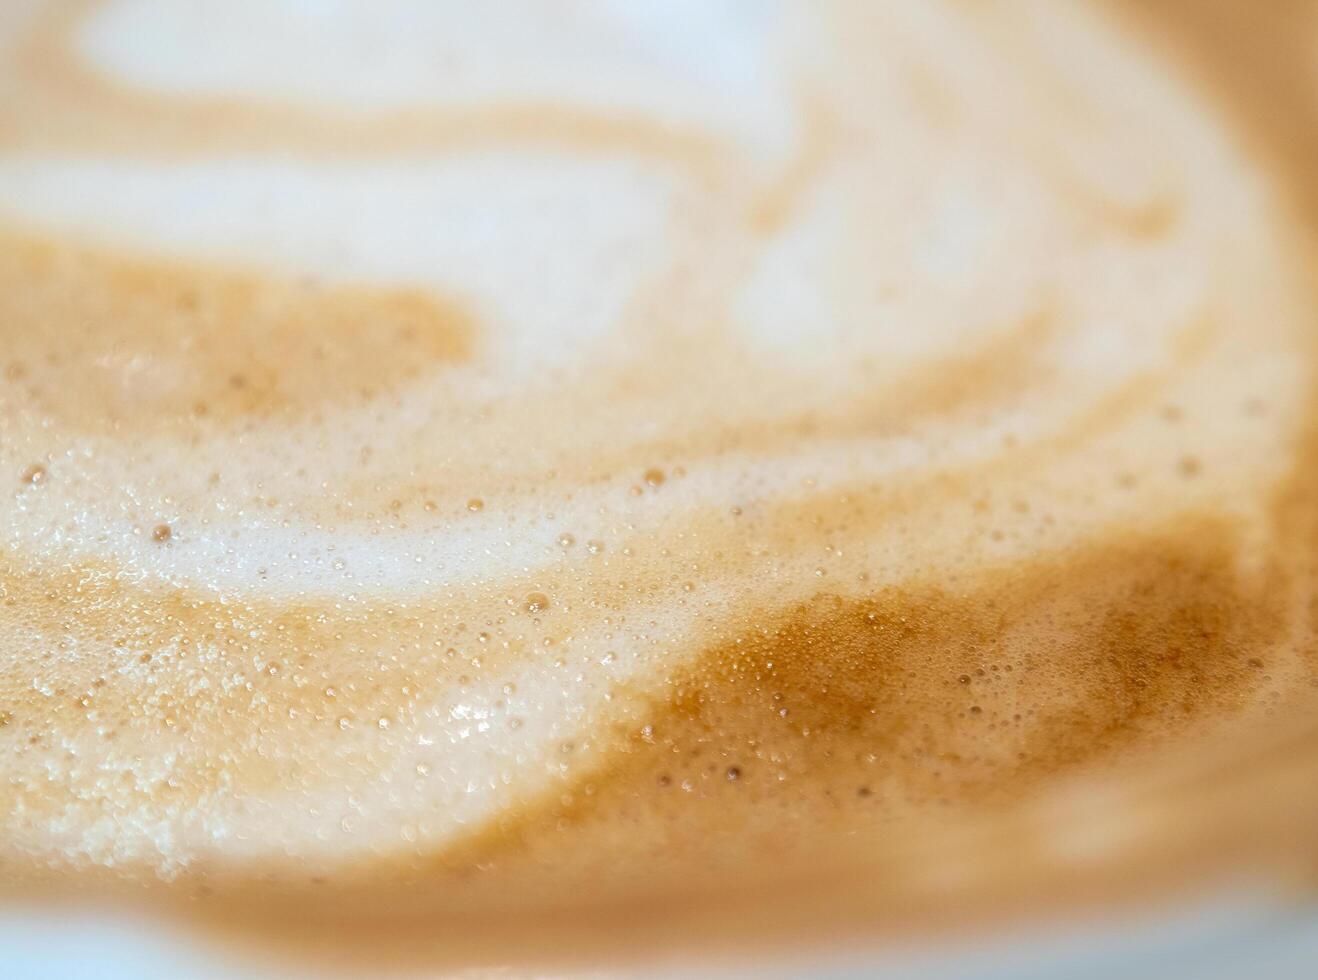 textur yta av mjuk och delikat mjölk skumma i en kopp av kaffe foto